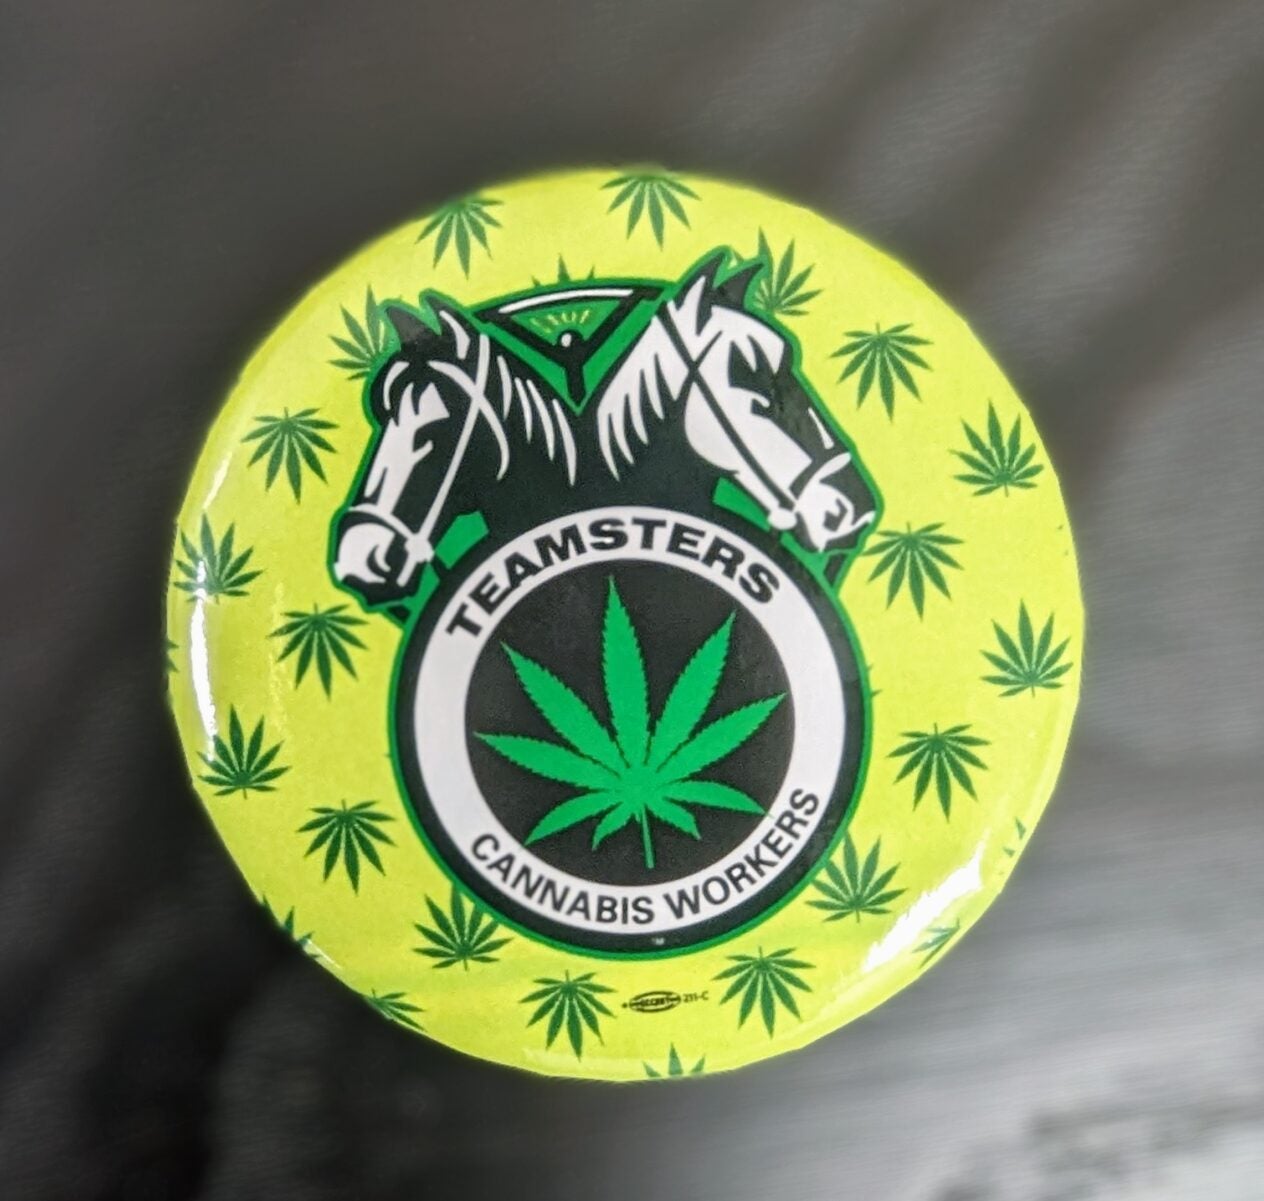 Cannabis Pin